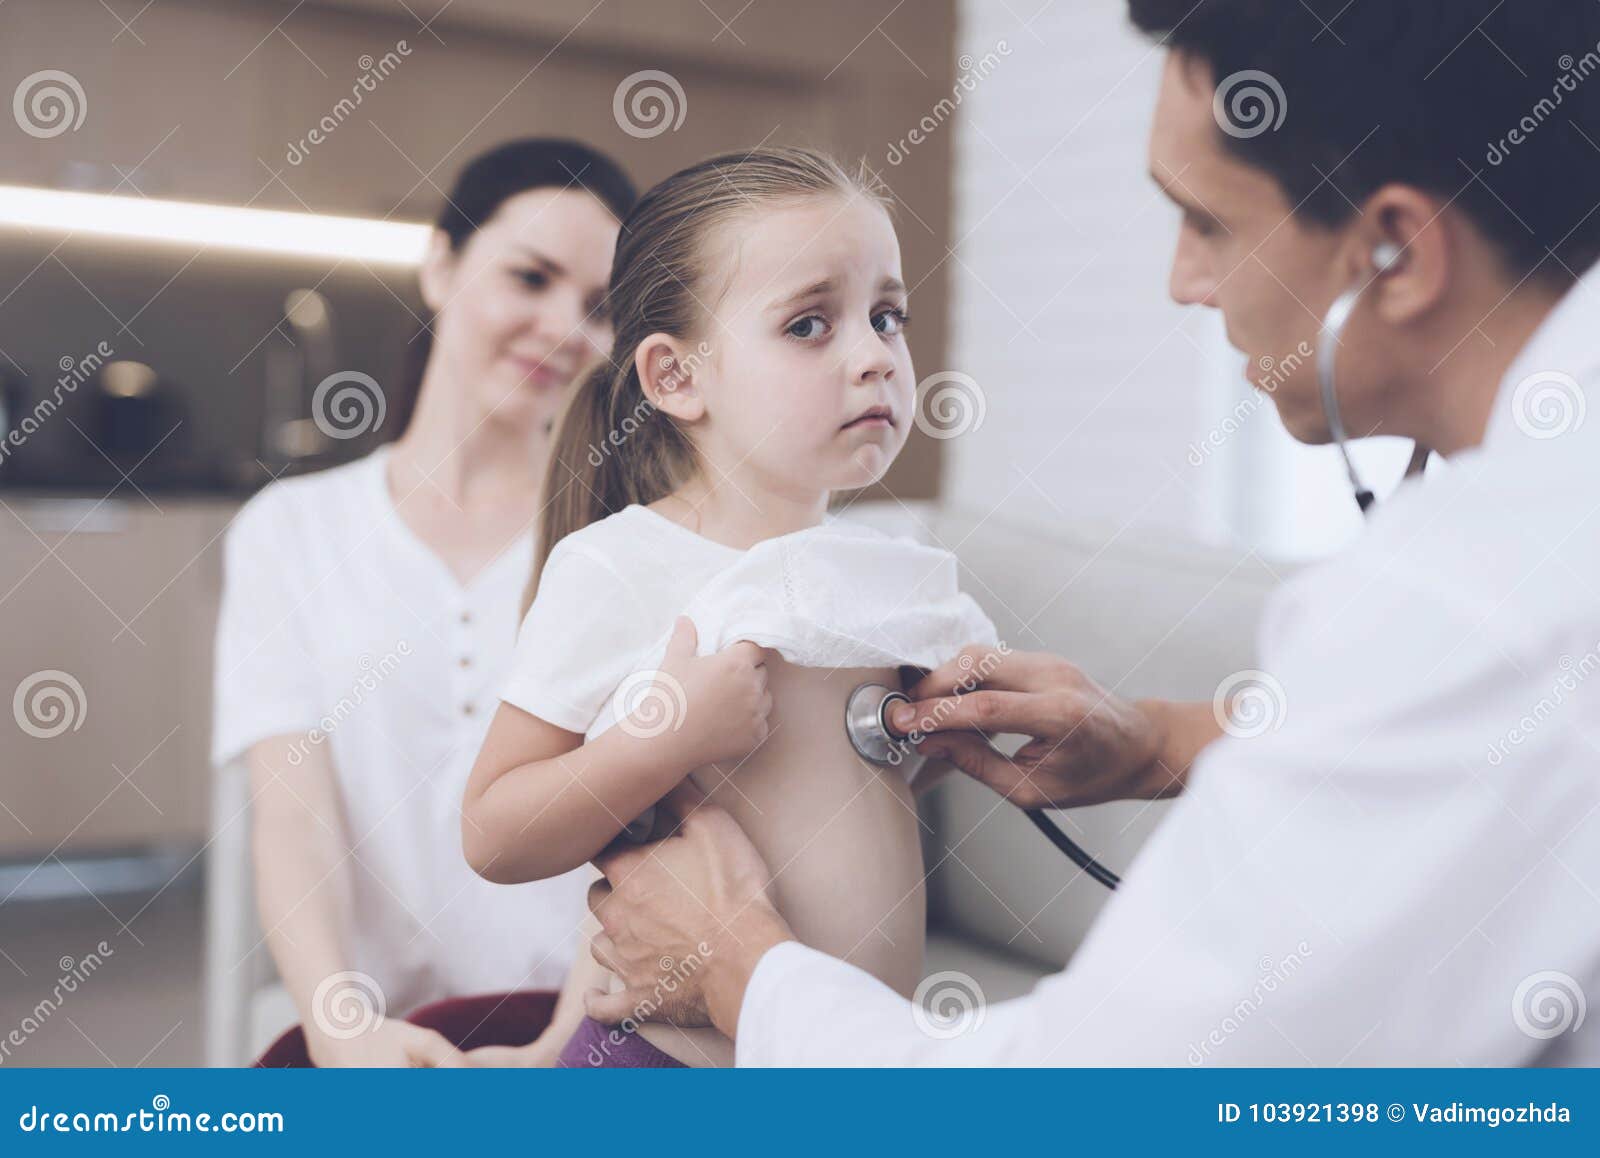 Родители вызвали врача. Доктор слушает девочку. Доктор слушает маленьких девочек. Доктор прослушивает девушку. Ребенок с фонендоскопом.